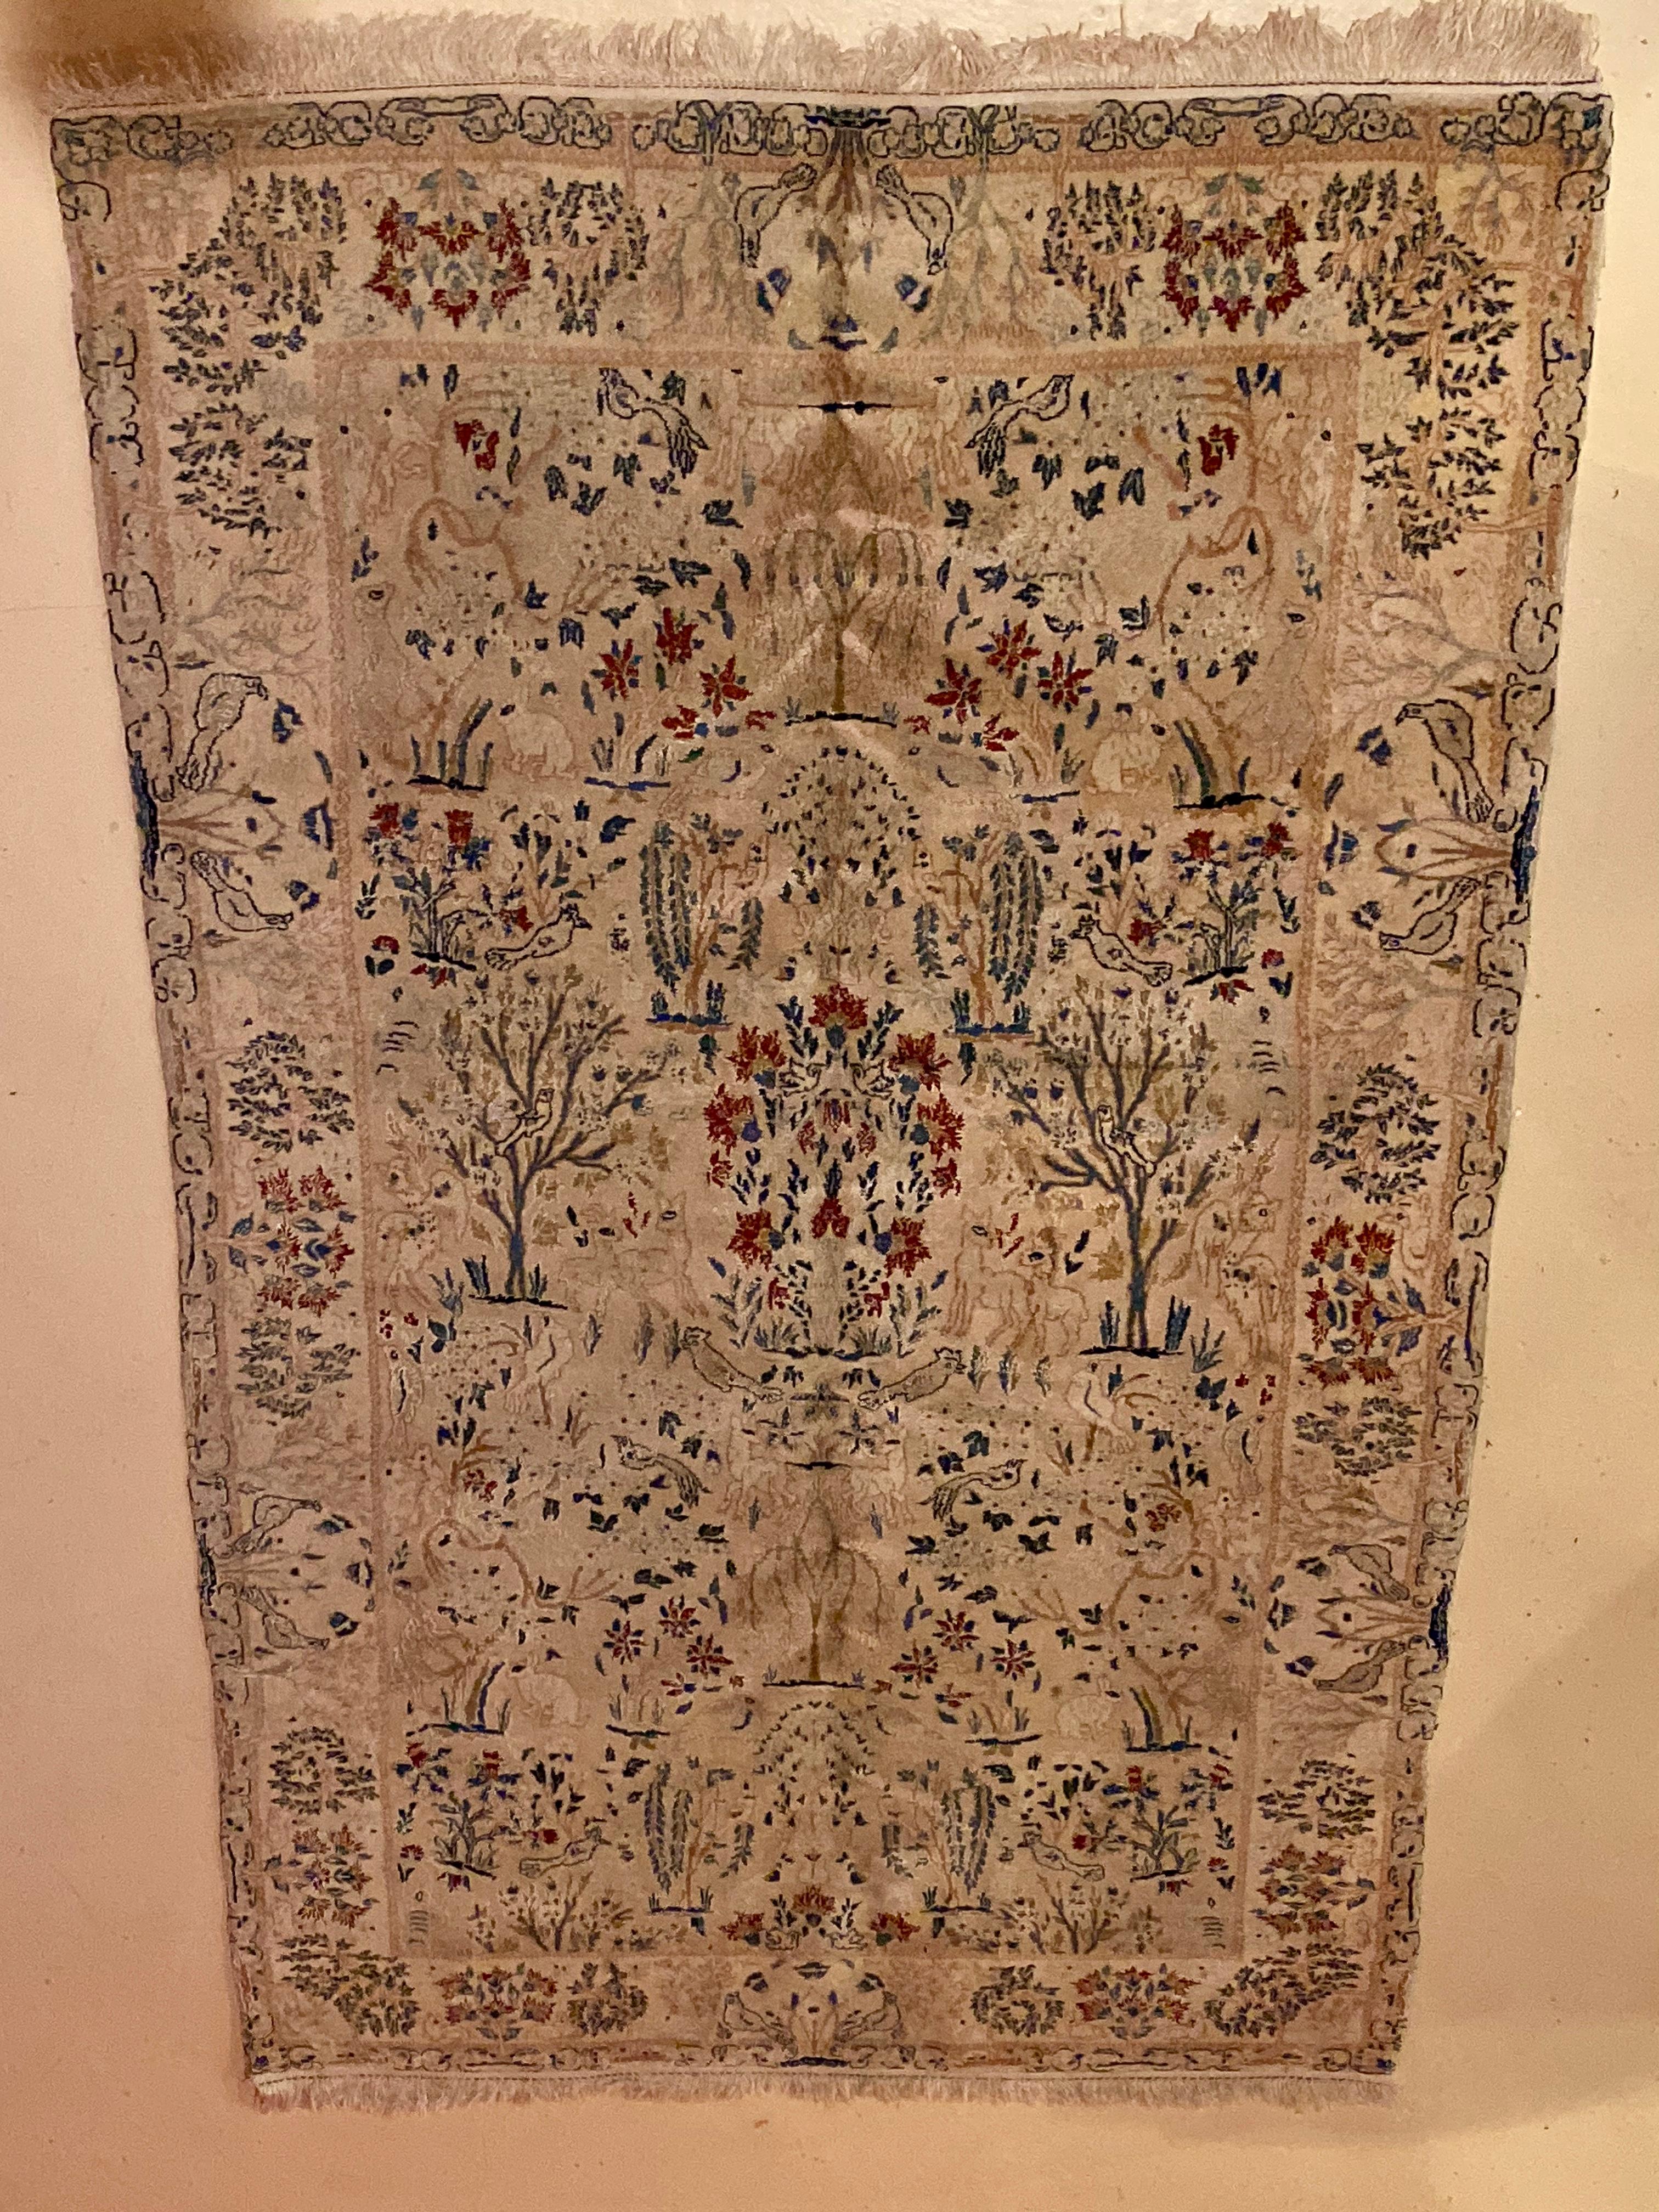 Ein handgewebter Teppich aus pakistanischer Wolle aus den 1970er Jahren mit einem sehr dicht gewebten Webstuhl mit Vögeln, Kaninchen, Bäumen und Hirschen in einem Wald. Ein schönes Beispiel für einen Orientteppich, der mit Liebe geknüpft wurde.